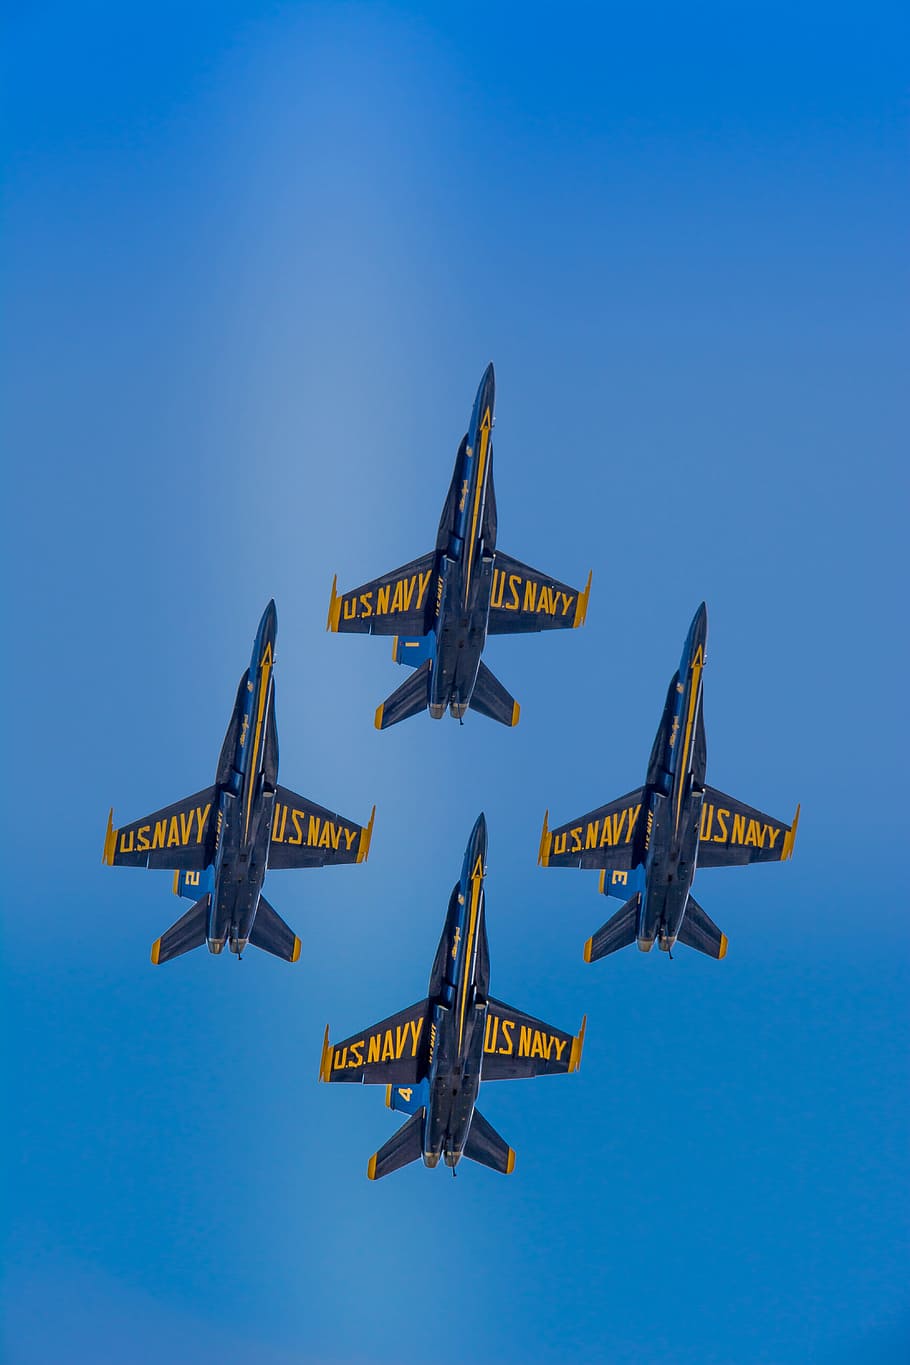 Anjos azuis, F-18, Zangão, Voar, Marinha, jato, avião, formação, show, aeronaves